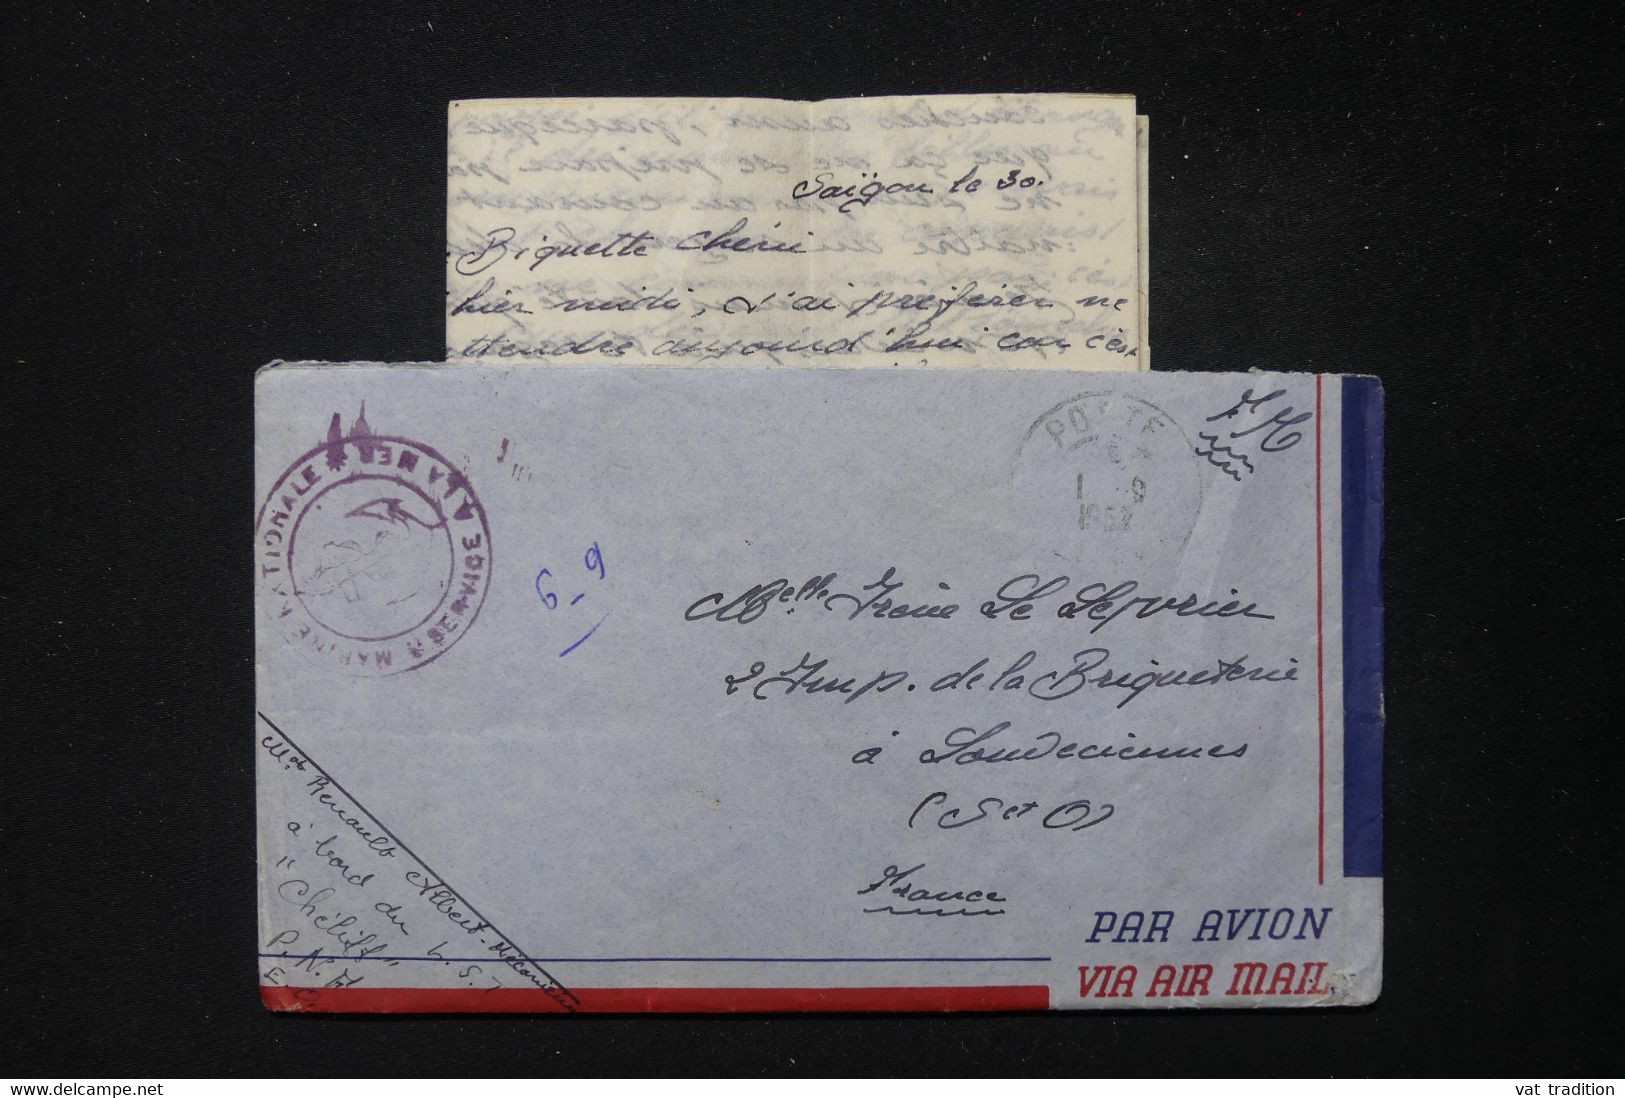 FRANCE / INDOCHINE - Enveloppe Avec Contenu D'un Marin En Indochine En 1952 Pour La France - L 83853 - Guerre D'Indochine / Viêt-Nam